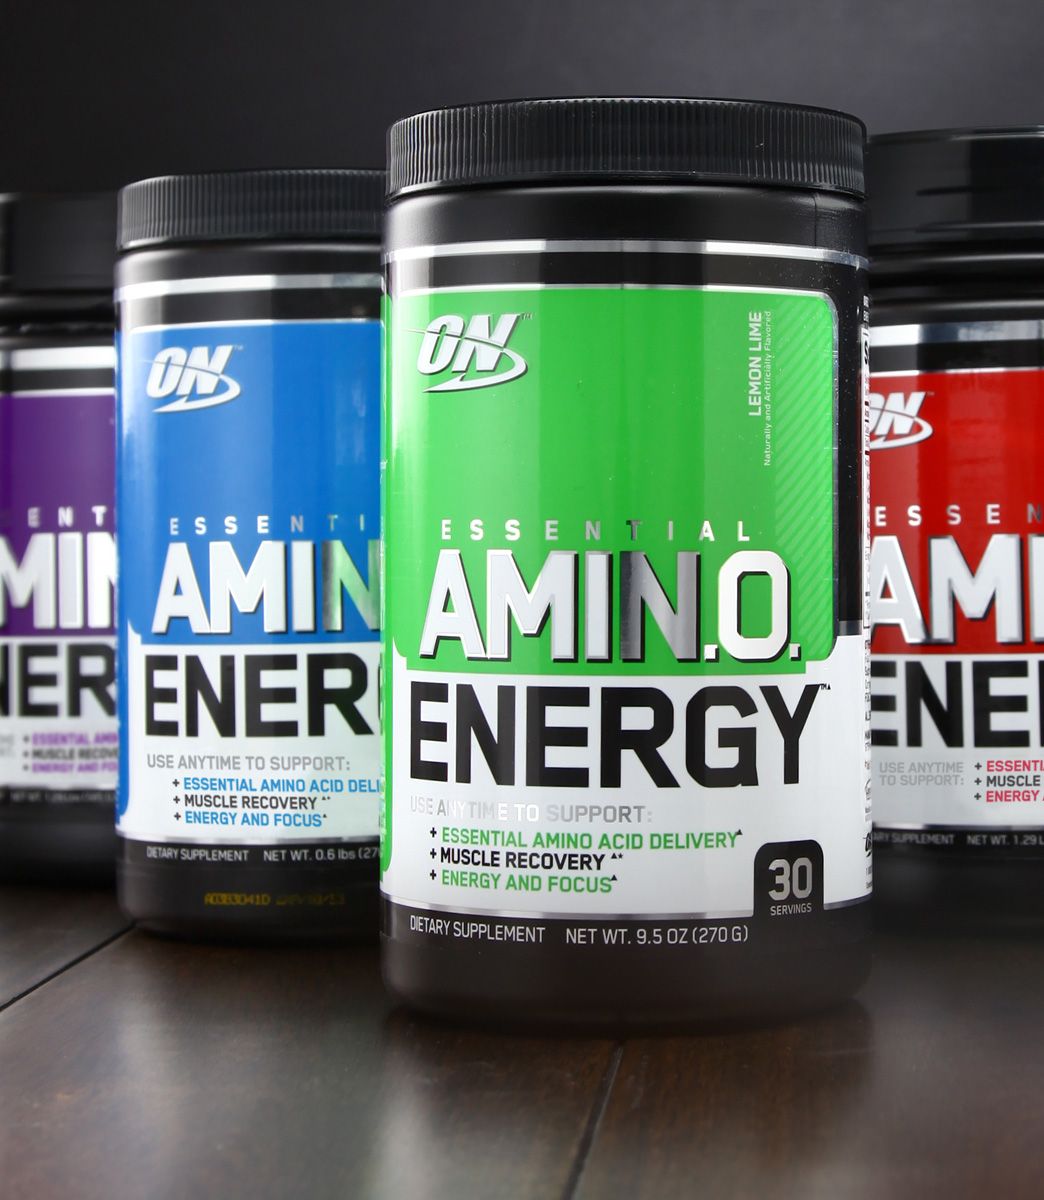 Amino energy: особенности продукта от optimum nutrition, как принимать добавку